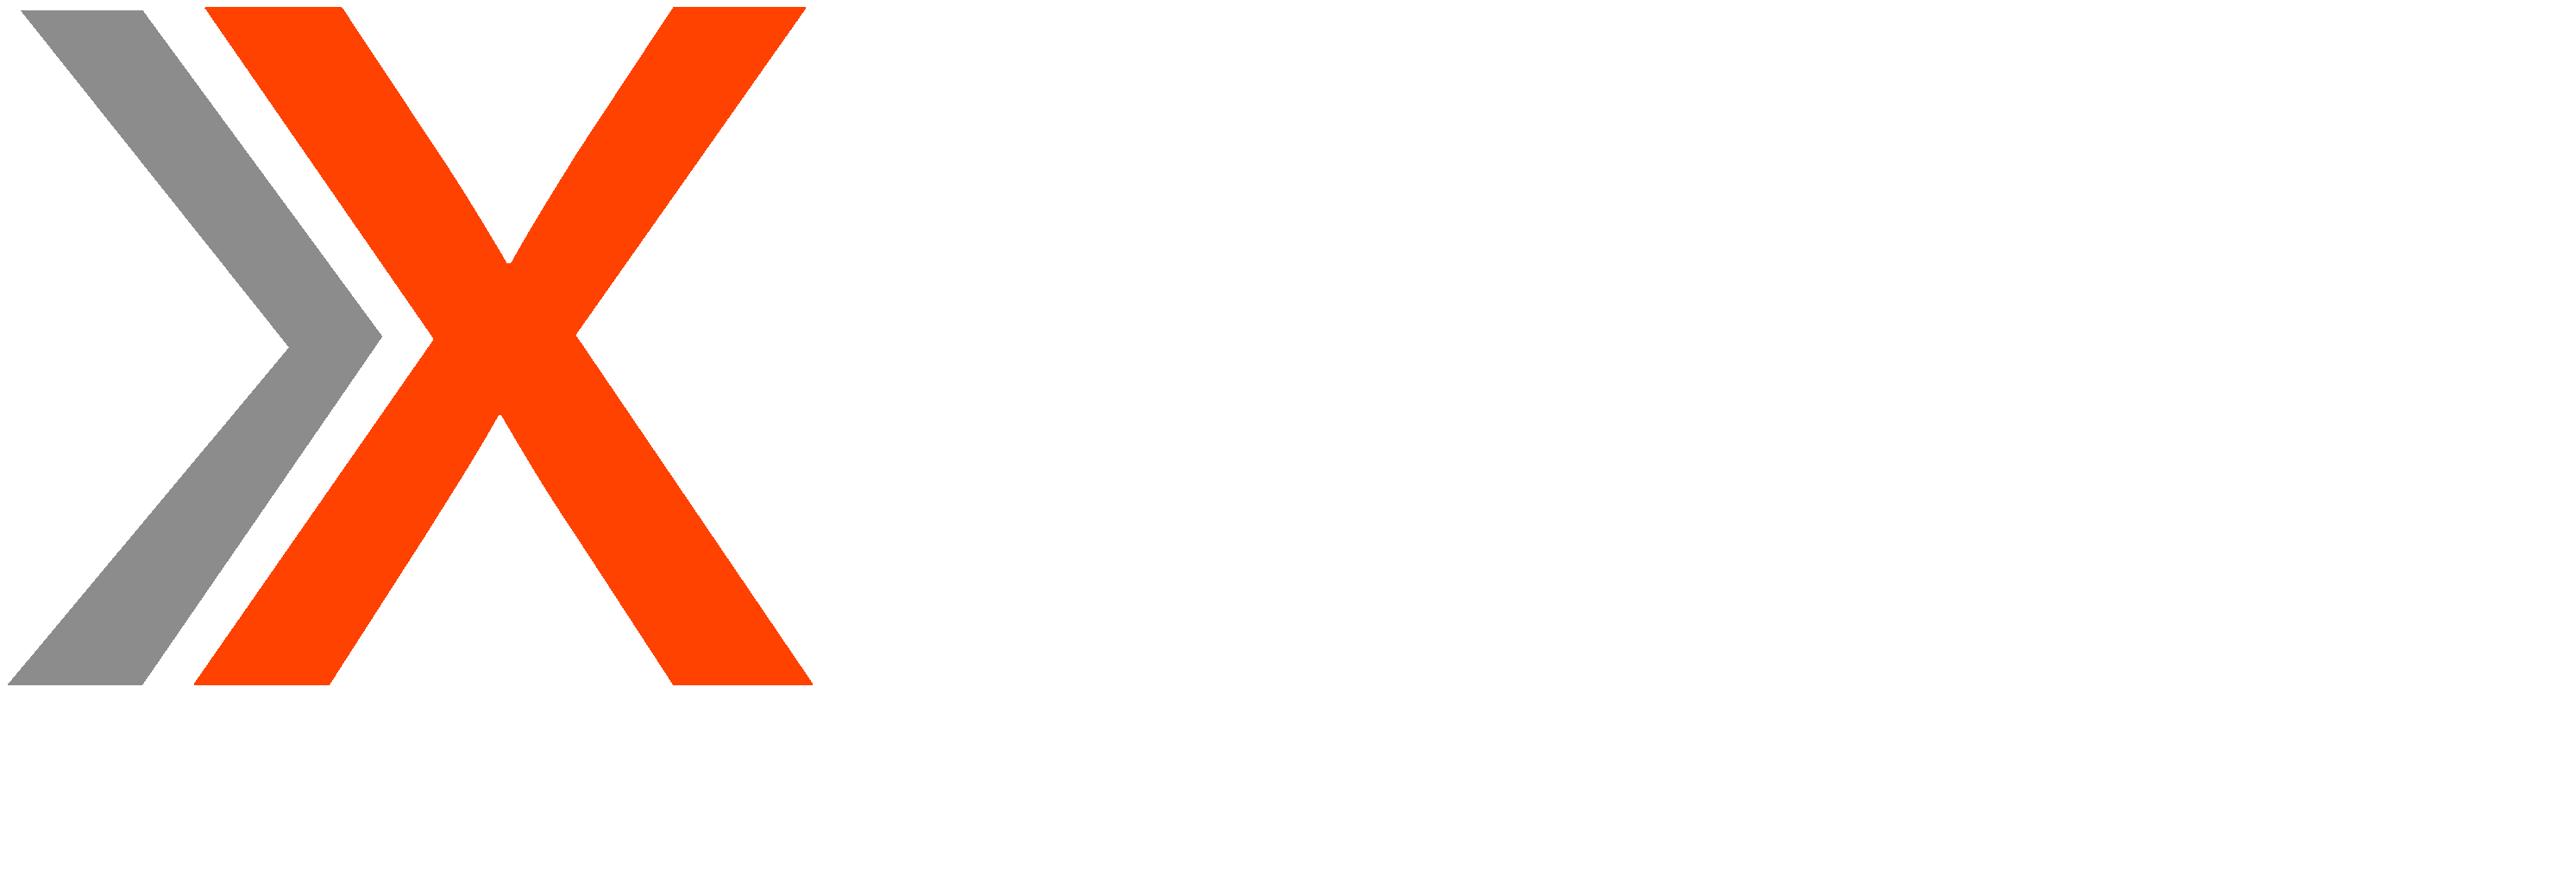 Logo Xitios